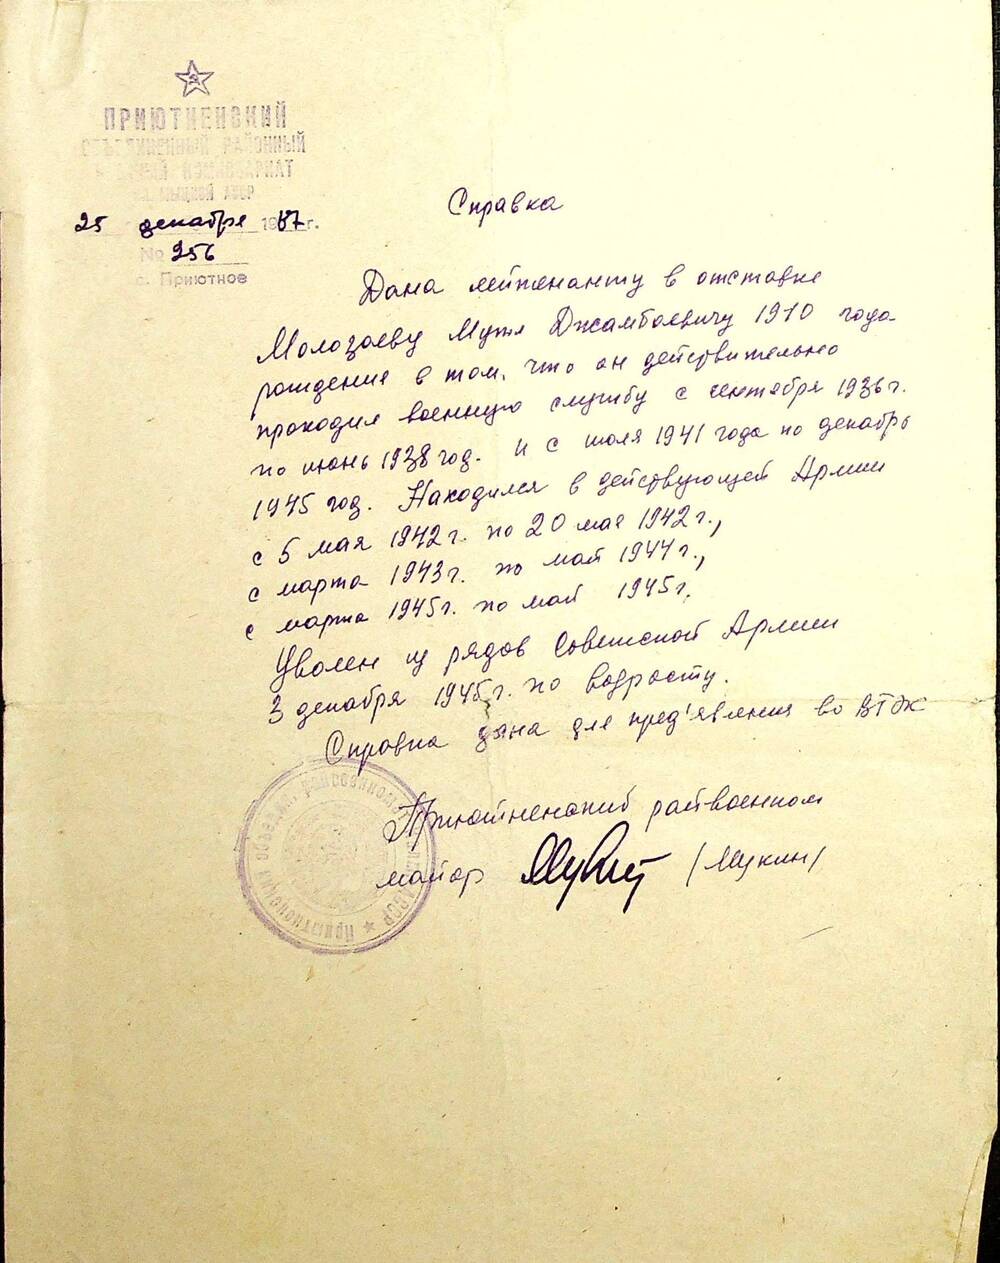 Справка, выданная лейтенанту в отставке Молозаеву М.Д. в том, что он находился в рядах Советской Армии с 15.10.1936 г. по 20.06.1938 г. и 15.07.1941 г. по 30.12.1945 г. Справка для предоставления во ВТЭК. От 25.12.1987 г.